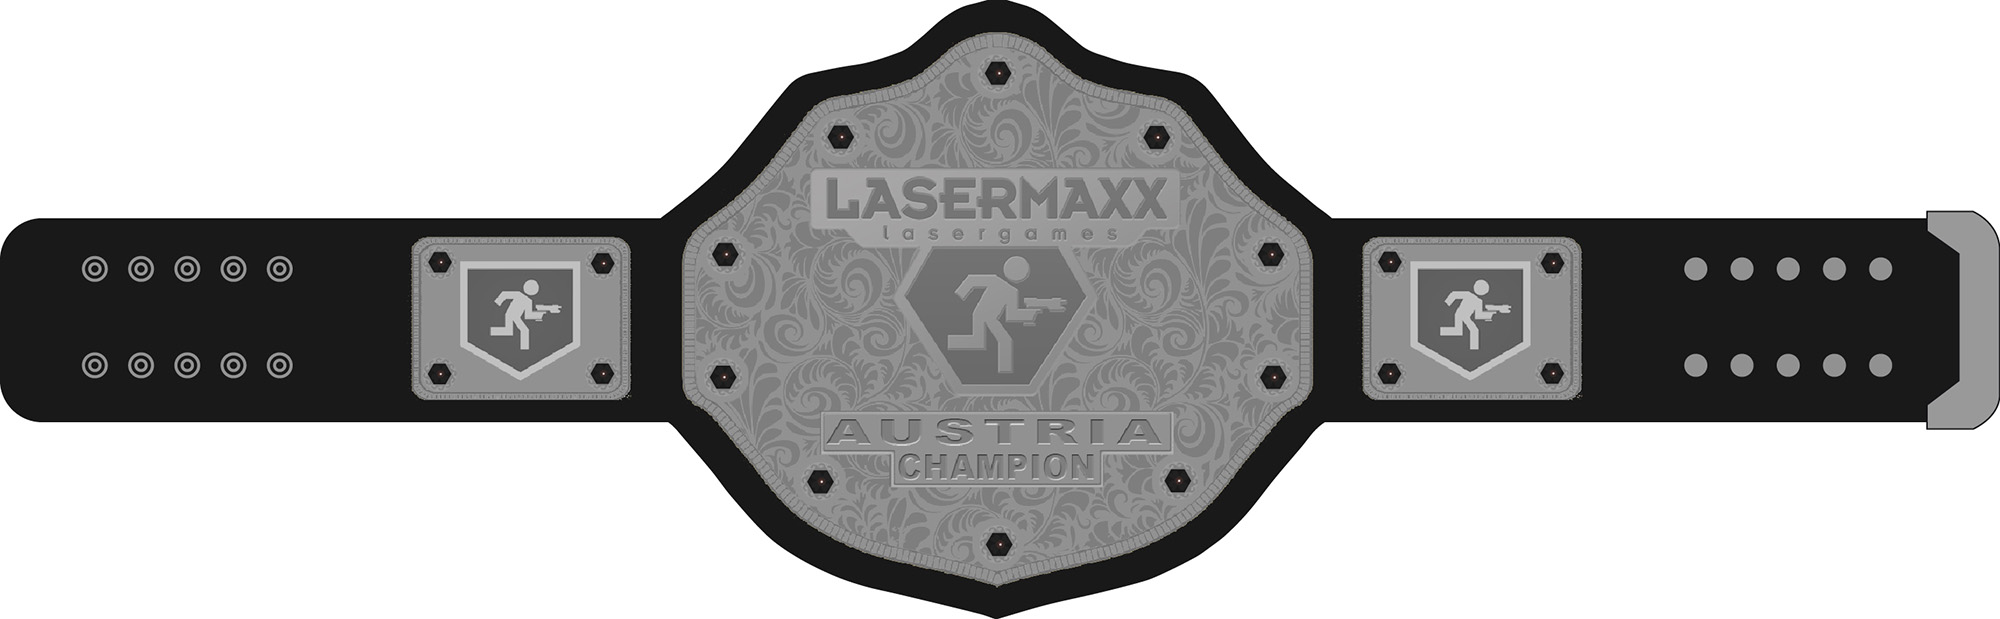 Lasermaxx Lasergames Lasertag Champion Grtel